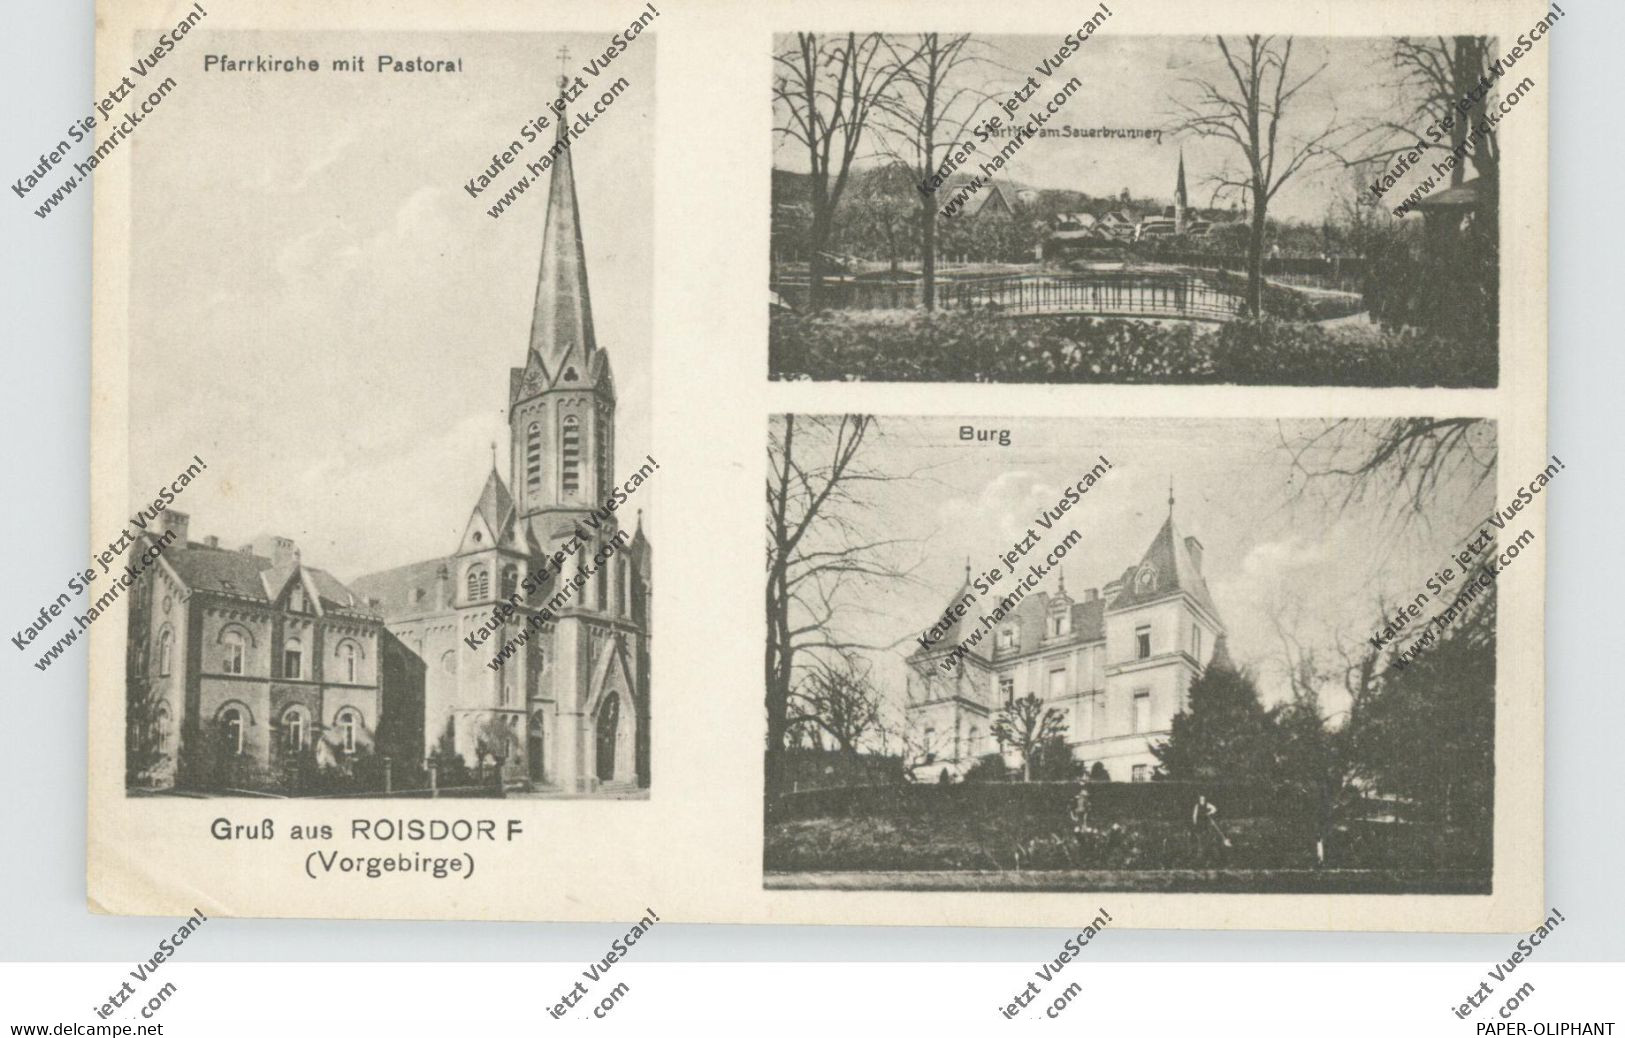 5303 BORNHEIM - ROISDORF, Pfarrkirche, Burg, Sauerbrunnen, 1922, Kl. Druckstelle - Bornheim